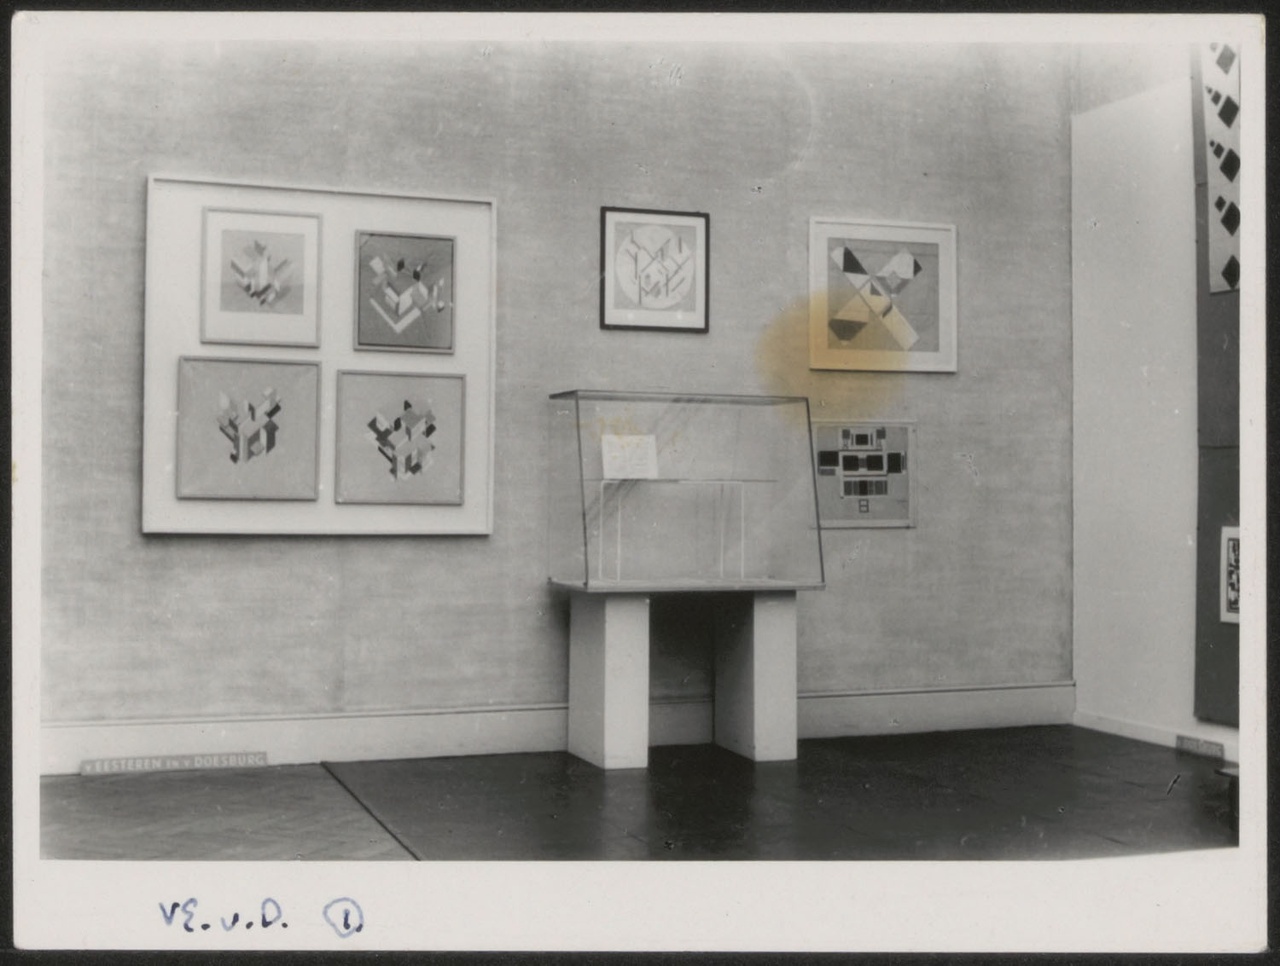 Afbeelding van tentoonstelling De Stijl SMA, 1951, zaal 1, wand Van Doesburg met vitrine